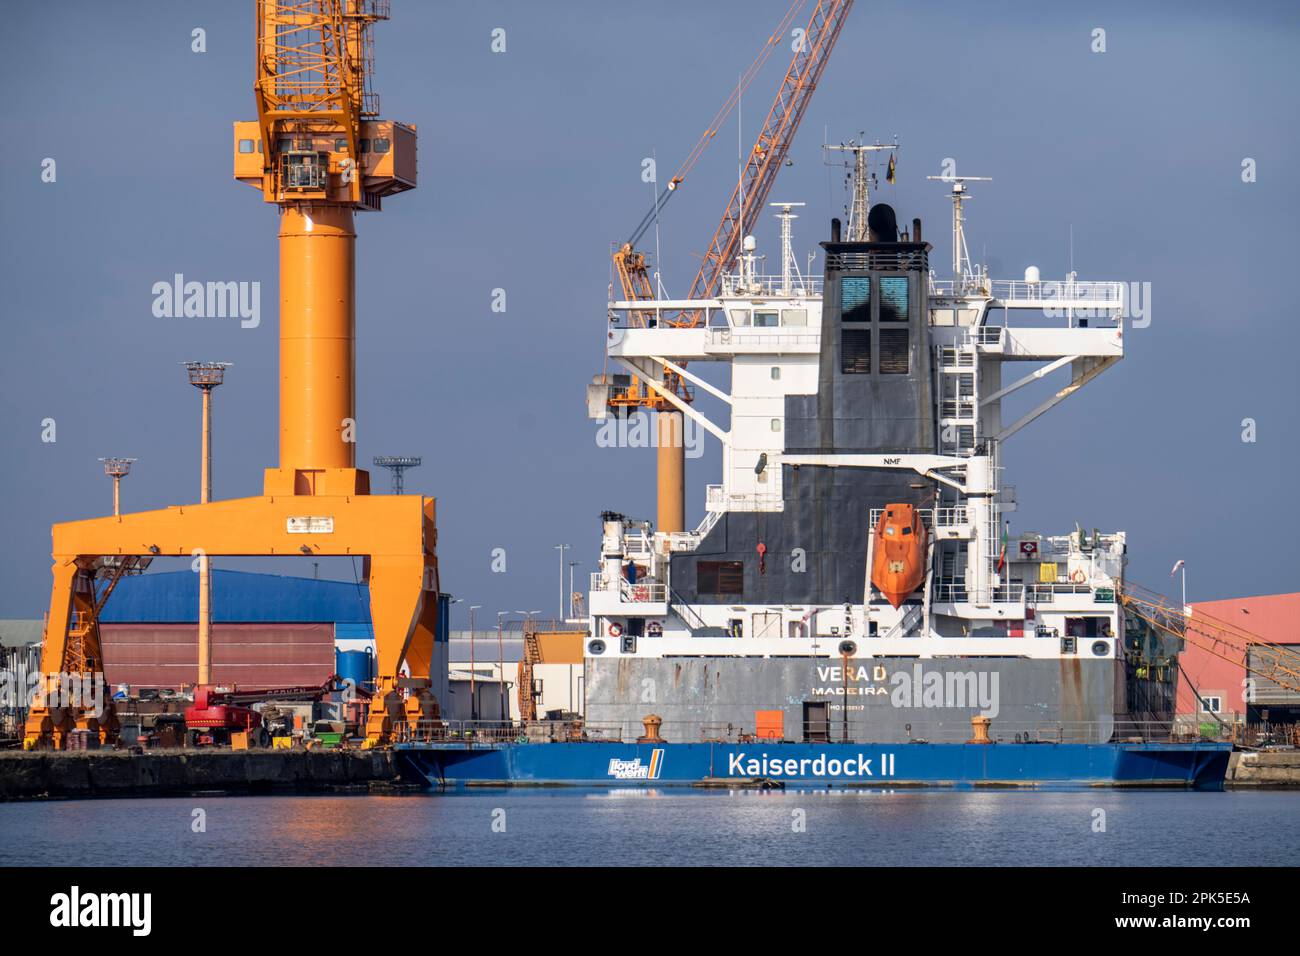 Lloyd Werft, cargo à Kaiserpier II, quai sec, cargo Adam Schulte, chantier naval dans le port d'outre-mer de Bremerhaven, Brême, Allemagne Banque D'Images